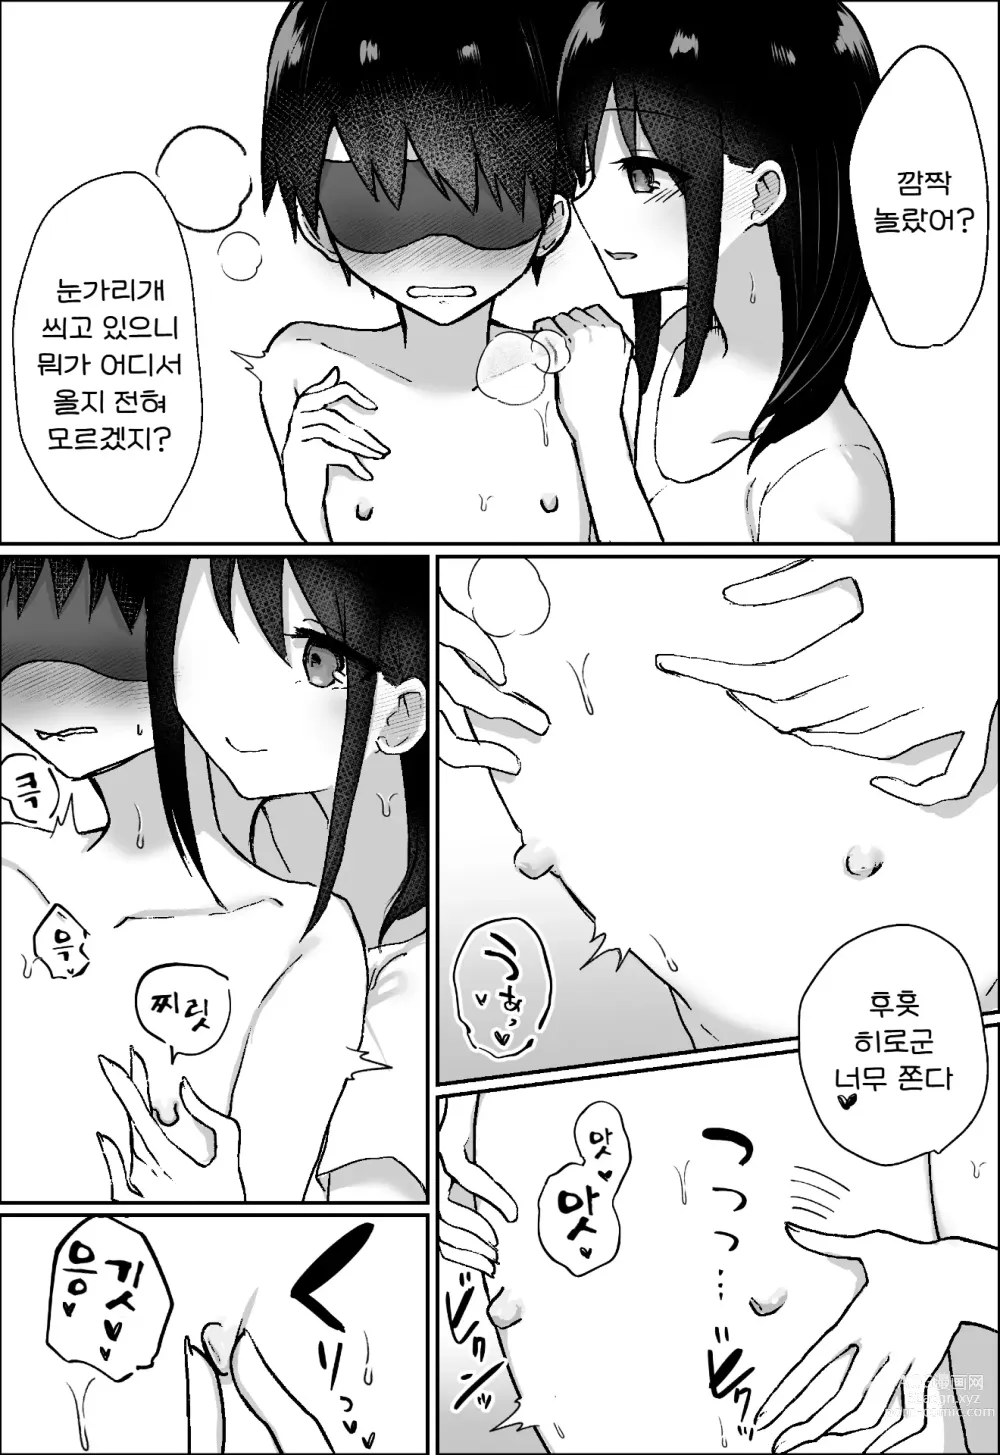 Page 17 of doujinshi 그녀에게 M용 비디오를 보다가 들켰기 때문에, 달콤하게 괴롭힘을 당하는 이야기